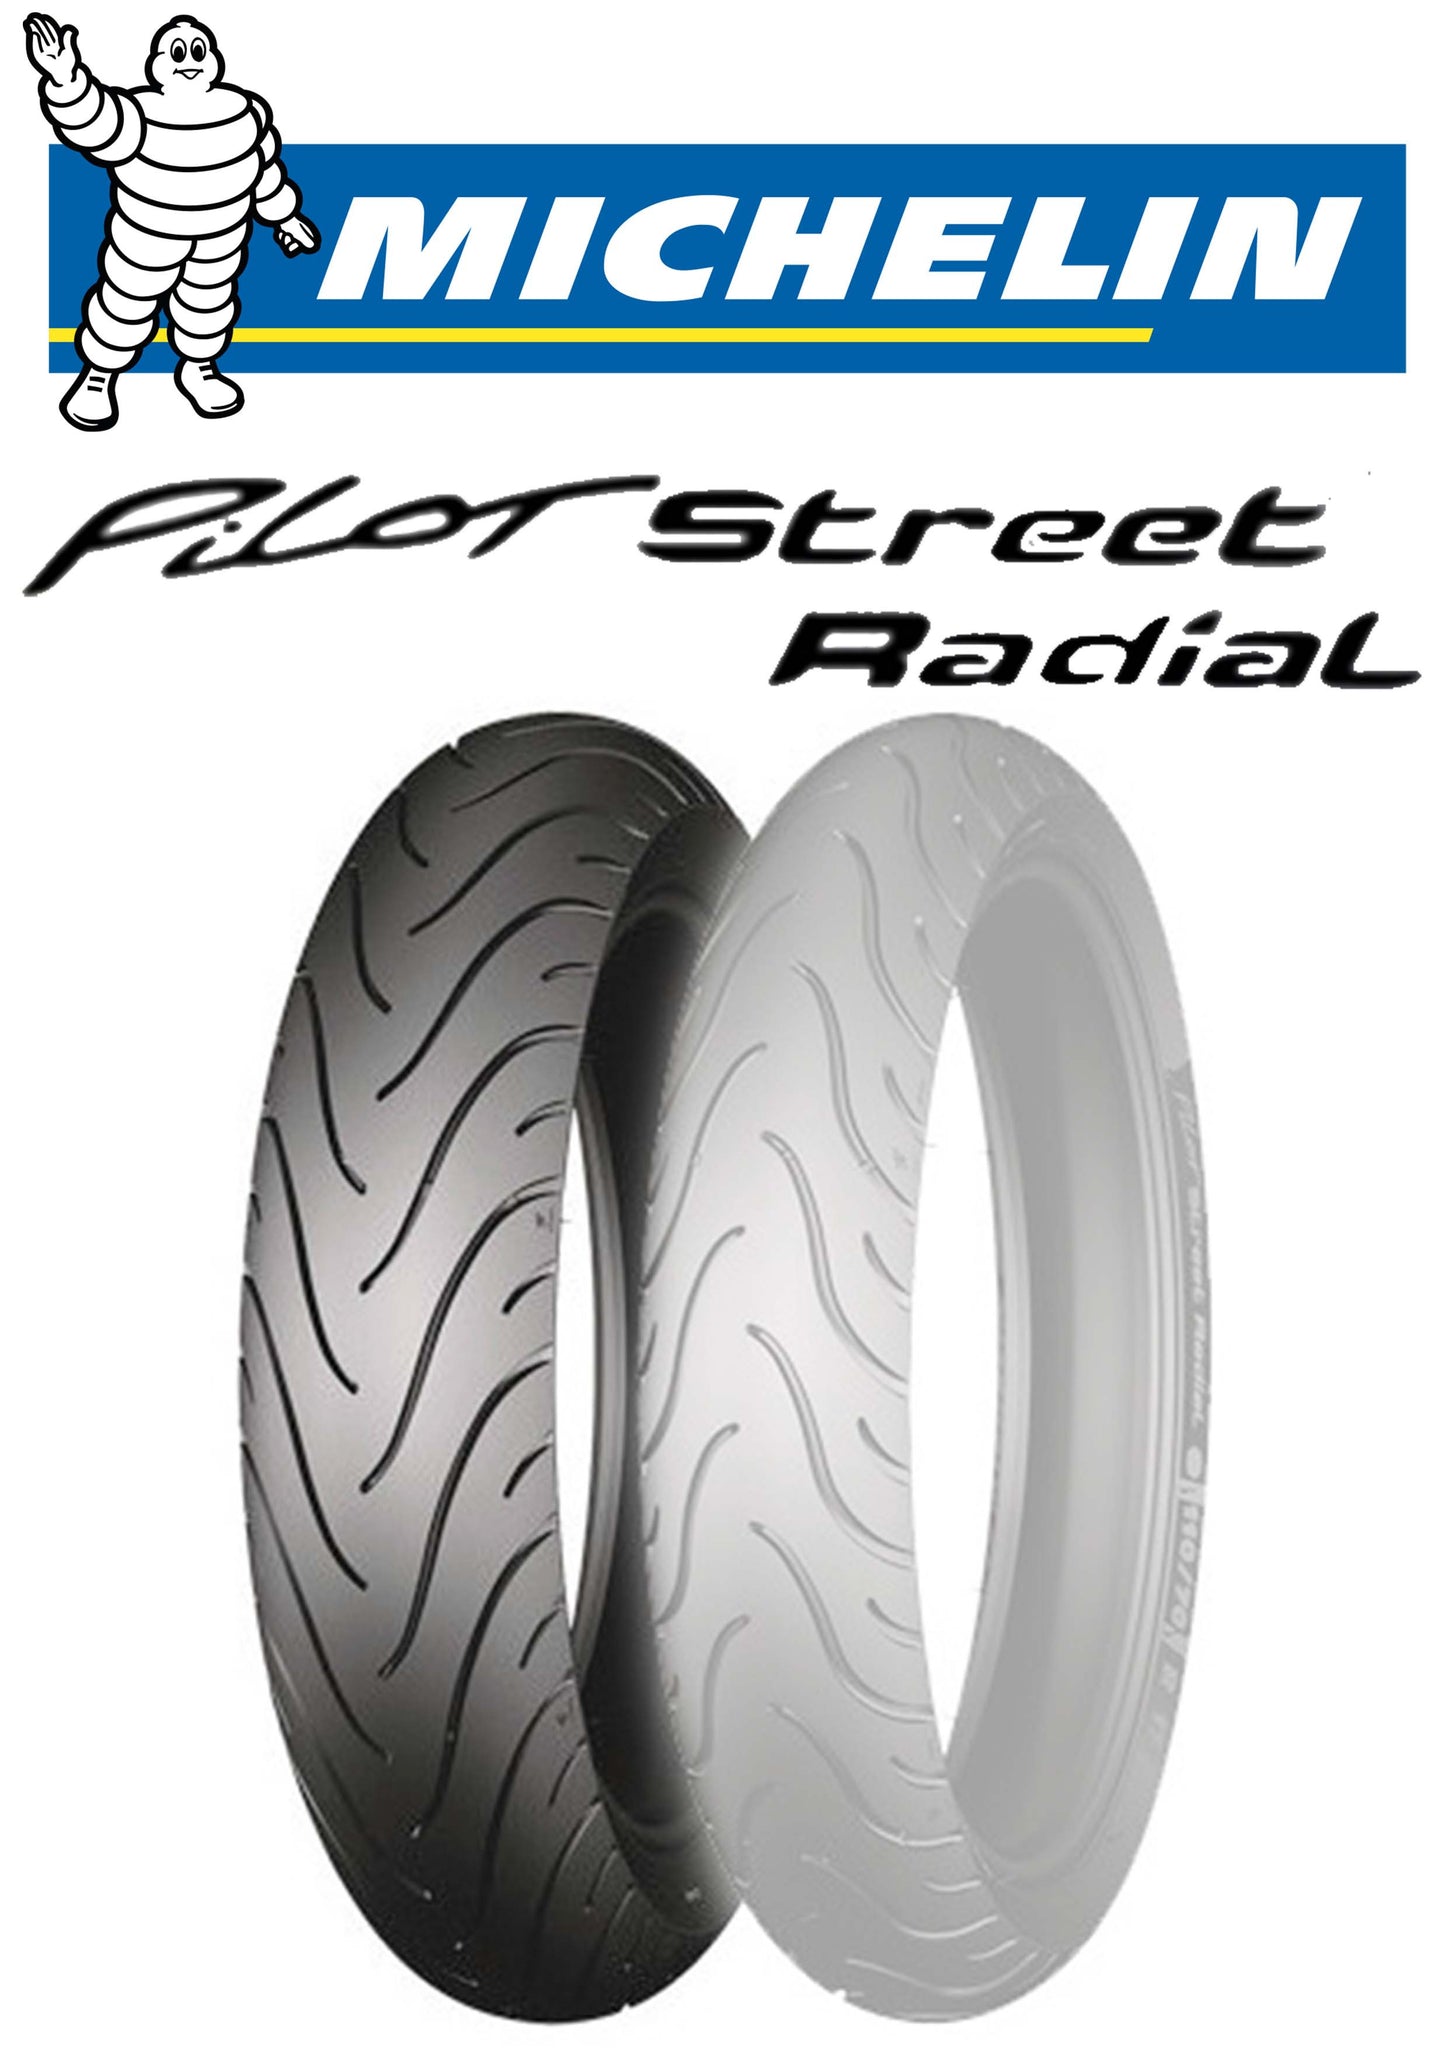 Michelin Pilot Street Radial 160 60 17 Just Bike Tyre